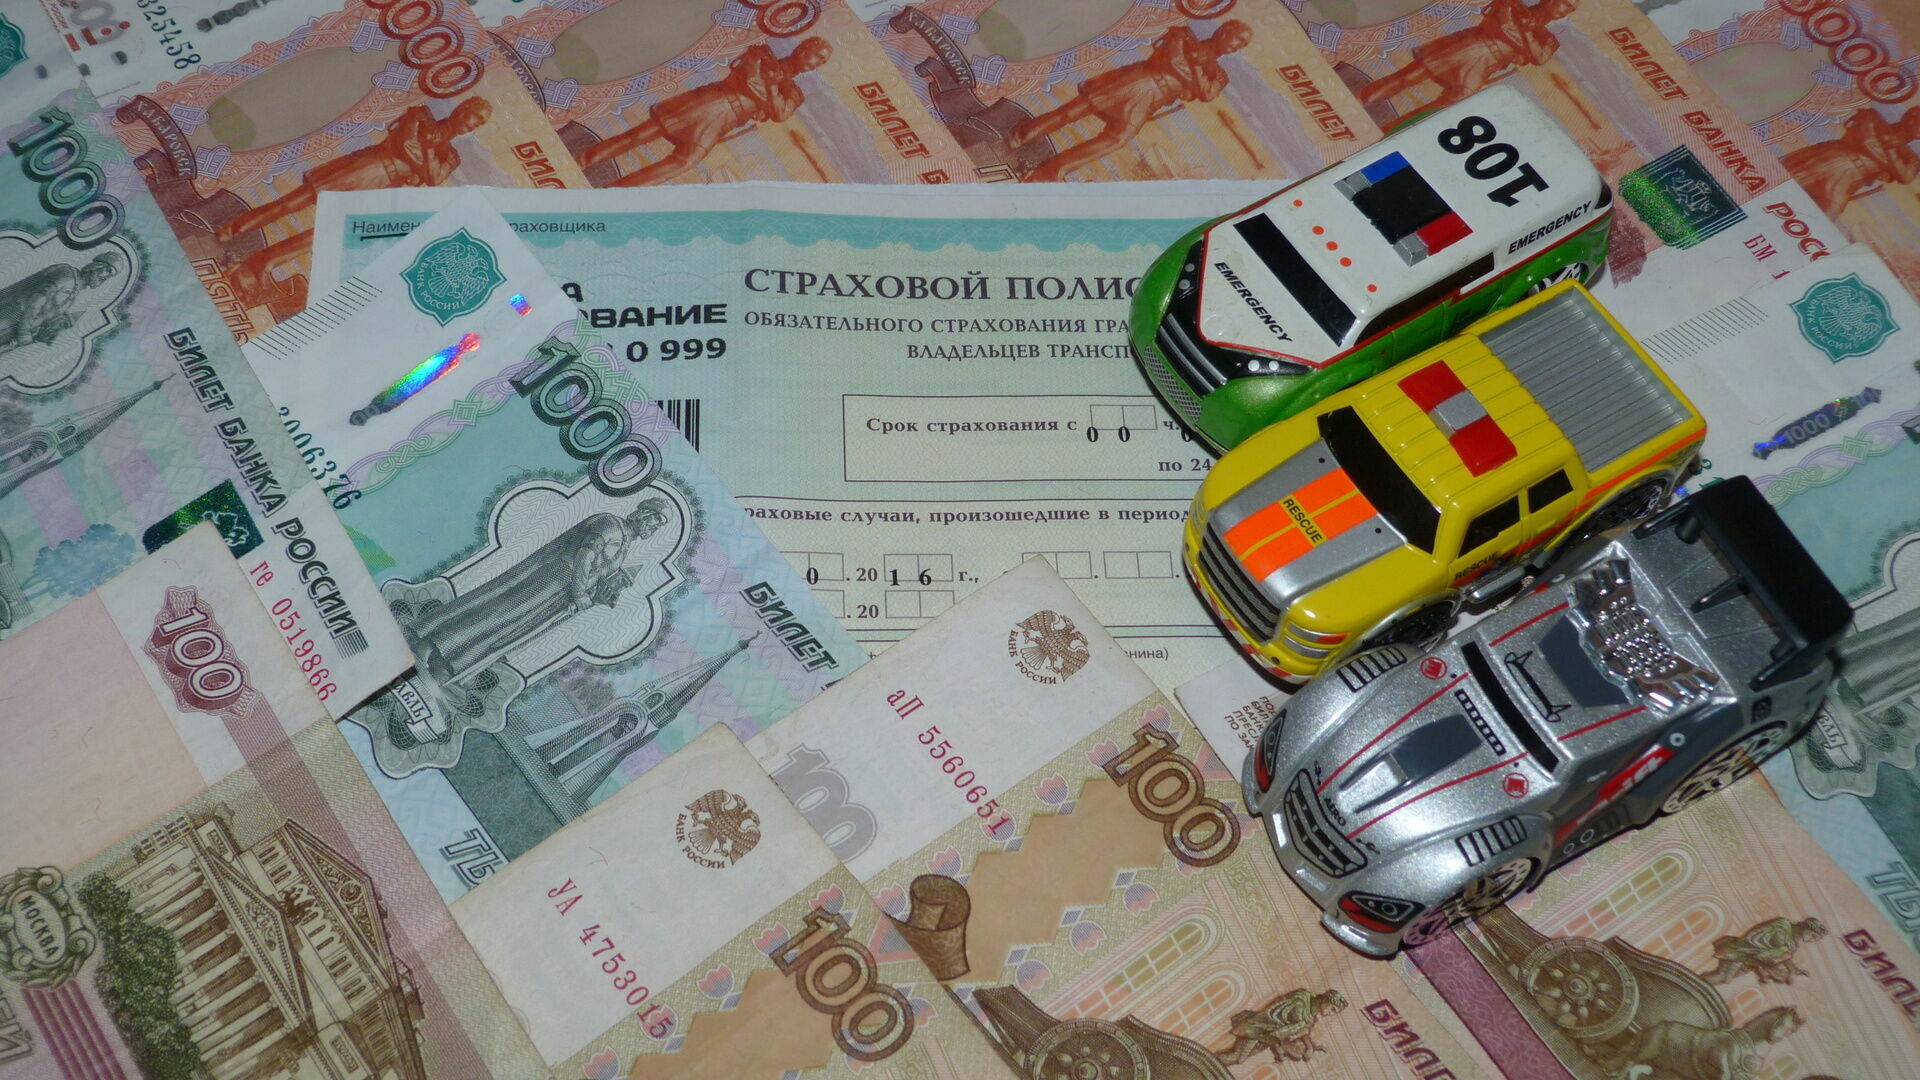 Сервис электронной купли-продажи автомобилей скоро появится в России